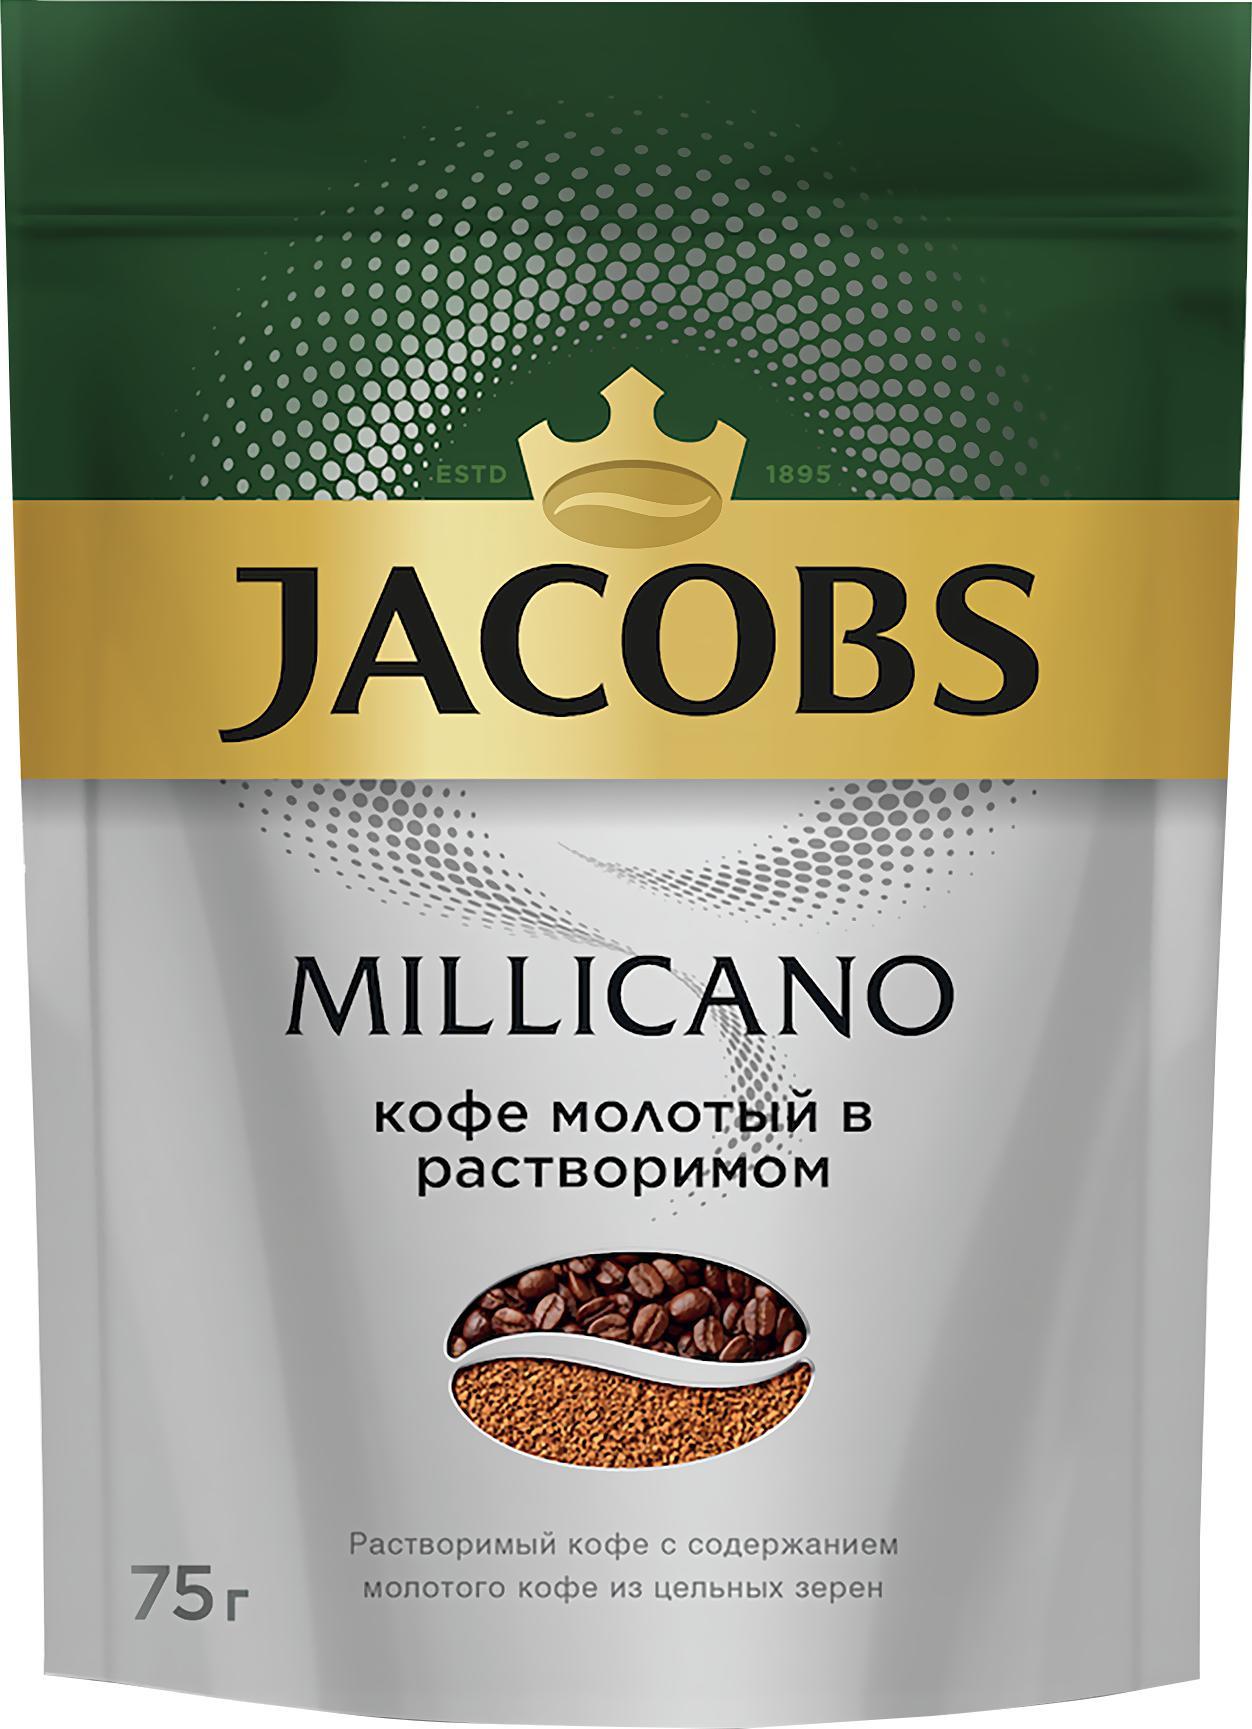 Кофе Jacobs Monarch Millicano растворимый 75 гр., дой-пак